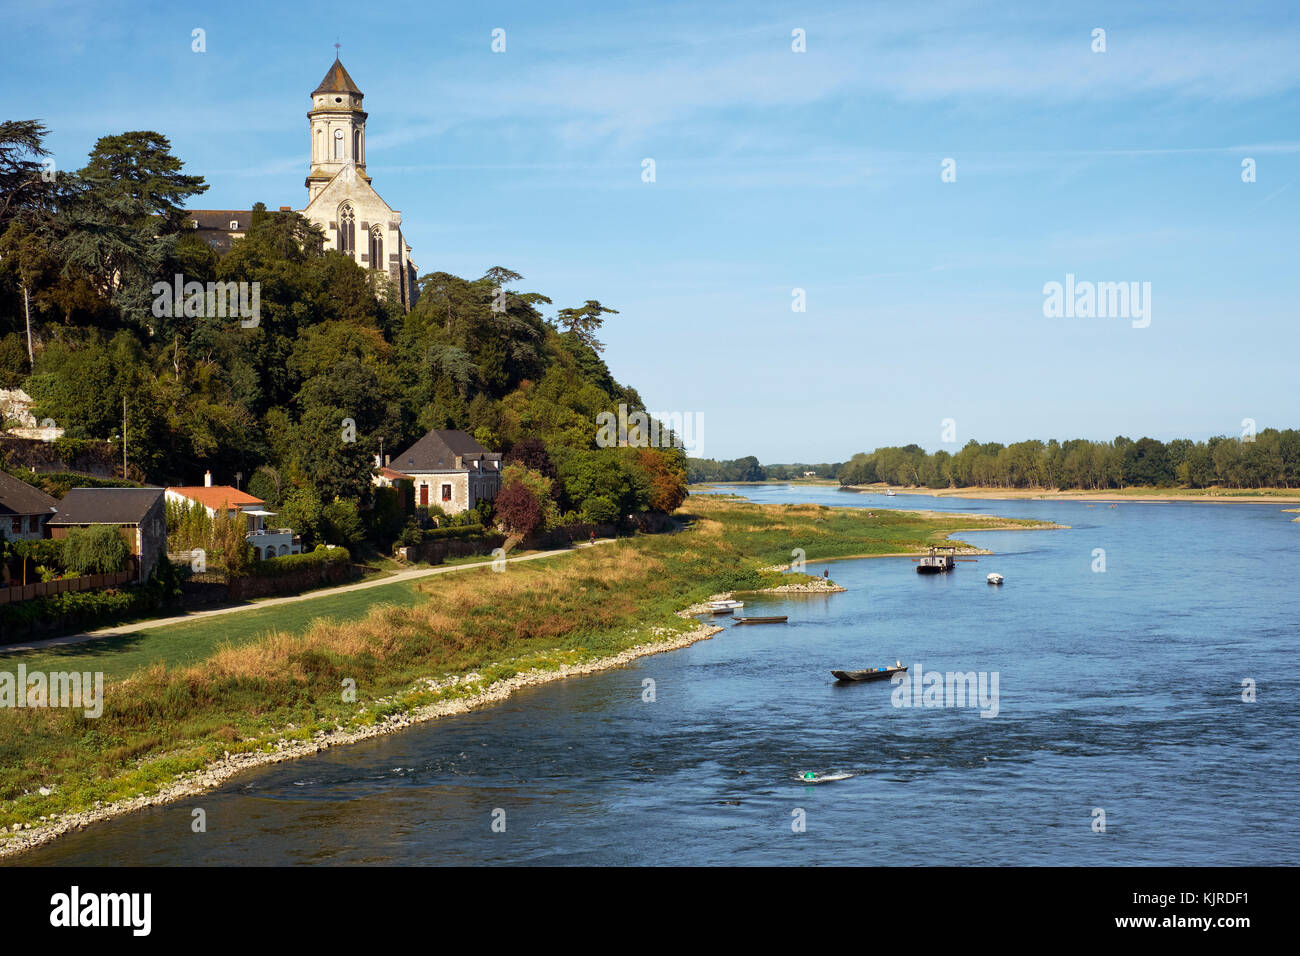 Saint Florent le Vieil sur le fleuve Loire, dans la vallée de la Loire France Banque D'Images